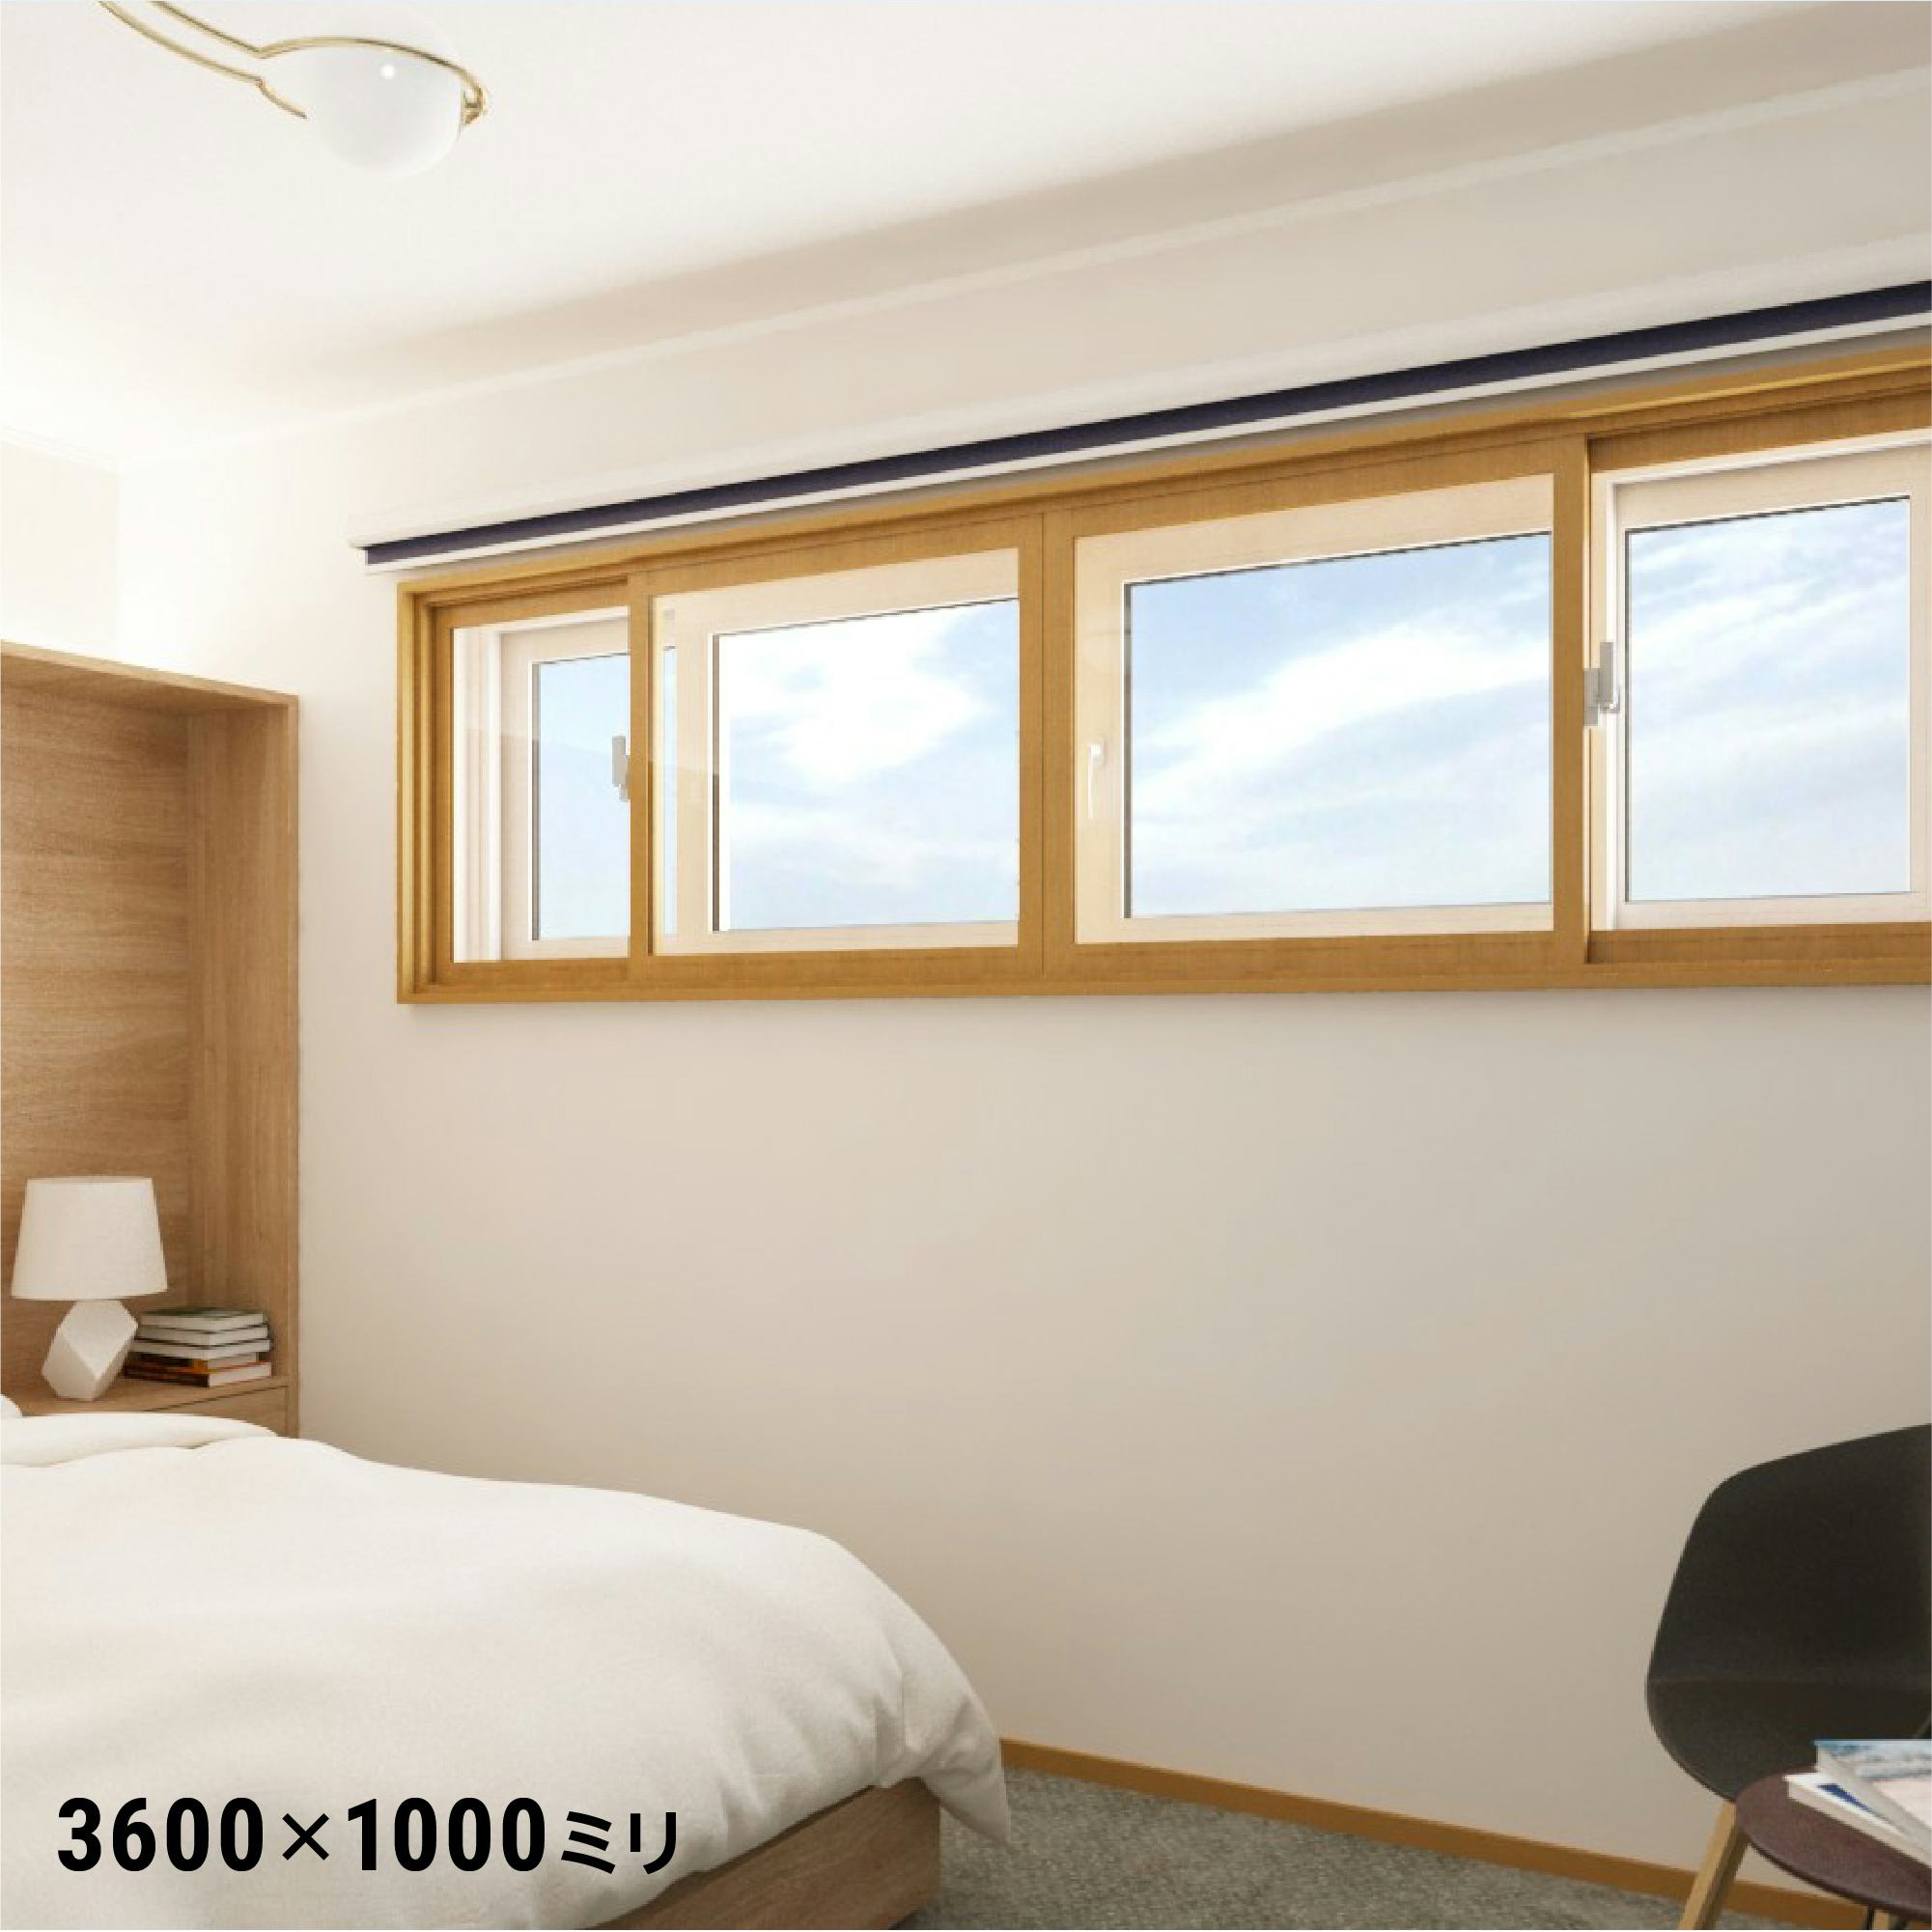 LIXILの内窓「インプラス」引き違い窓 for Renovation (4枚建て) - 寝室の窓に使用した事例